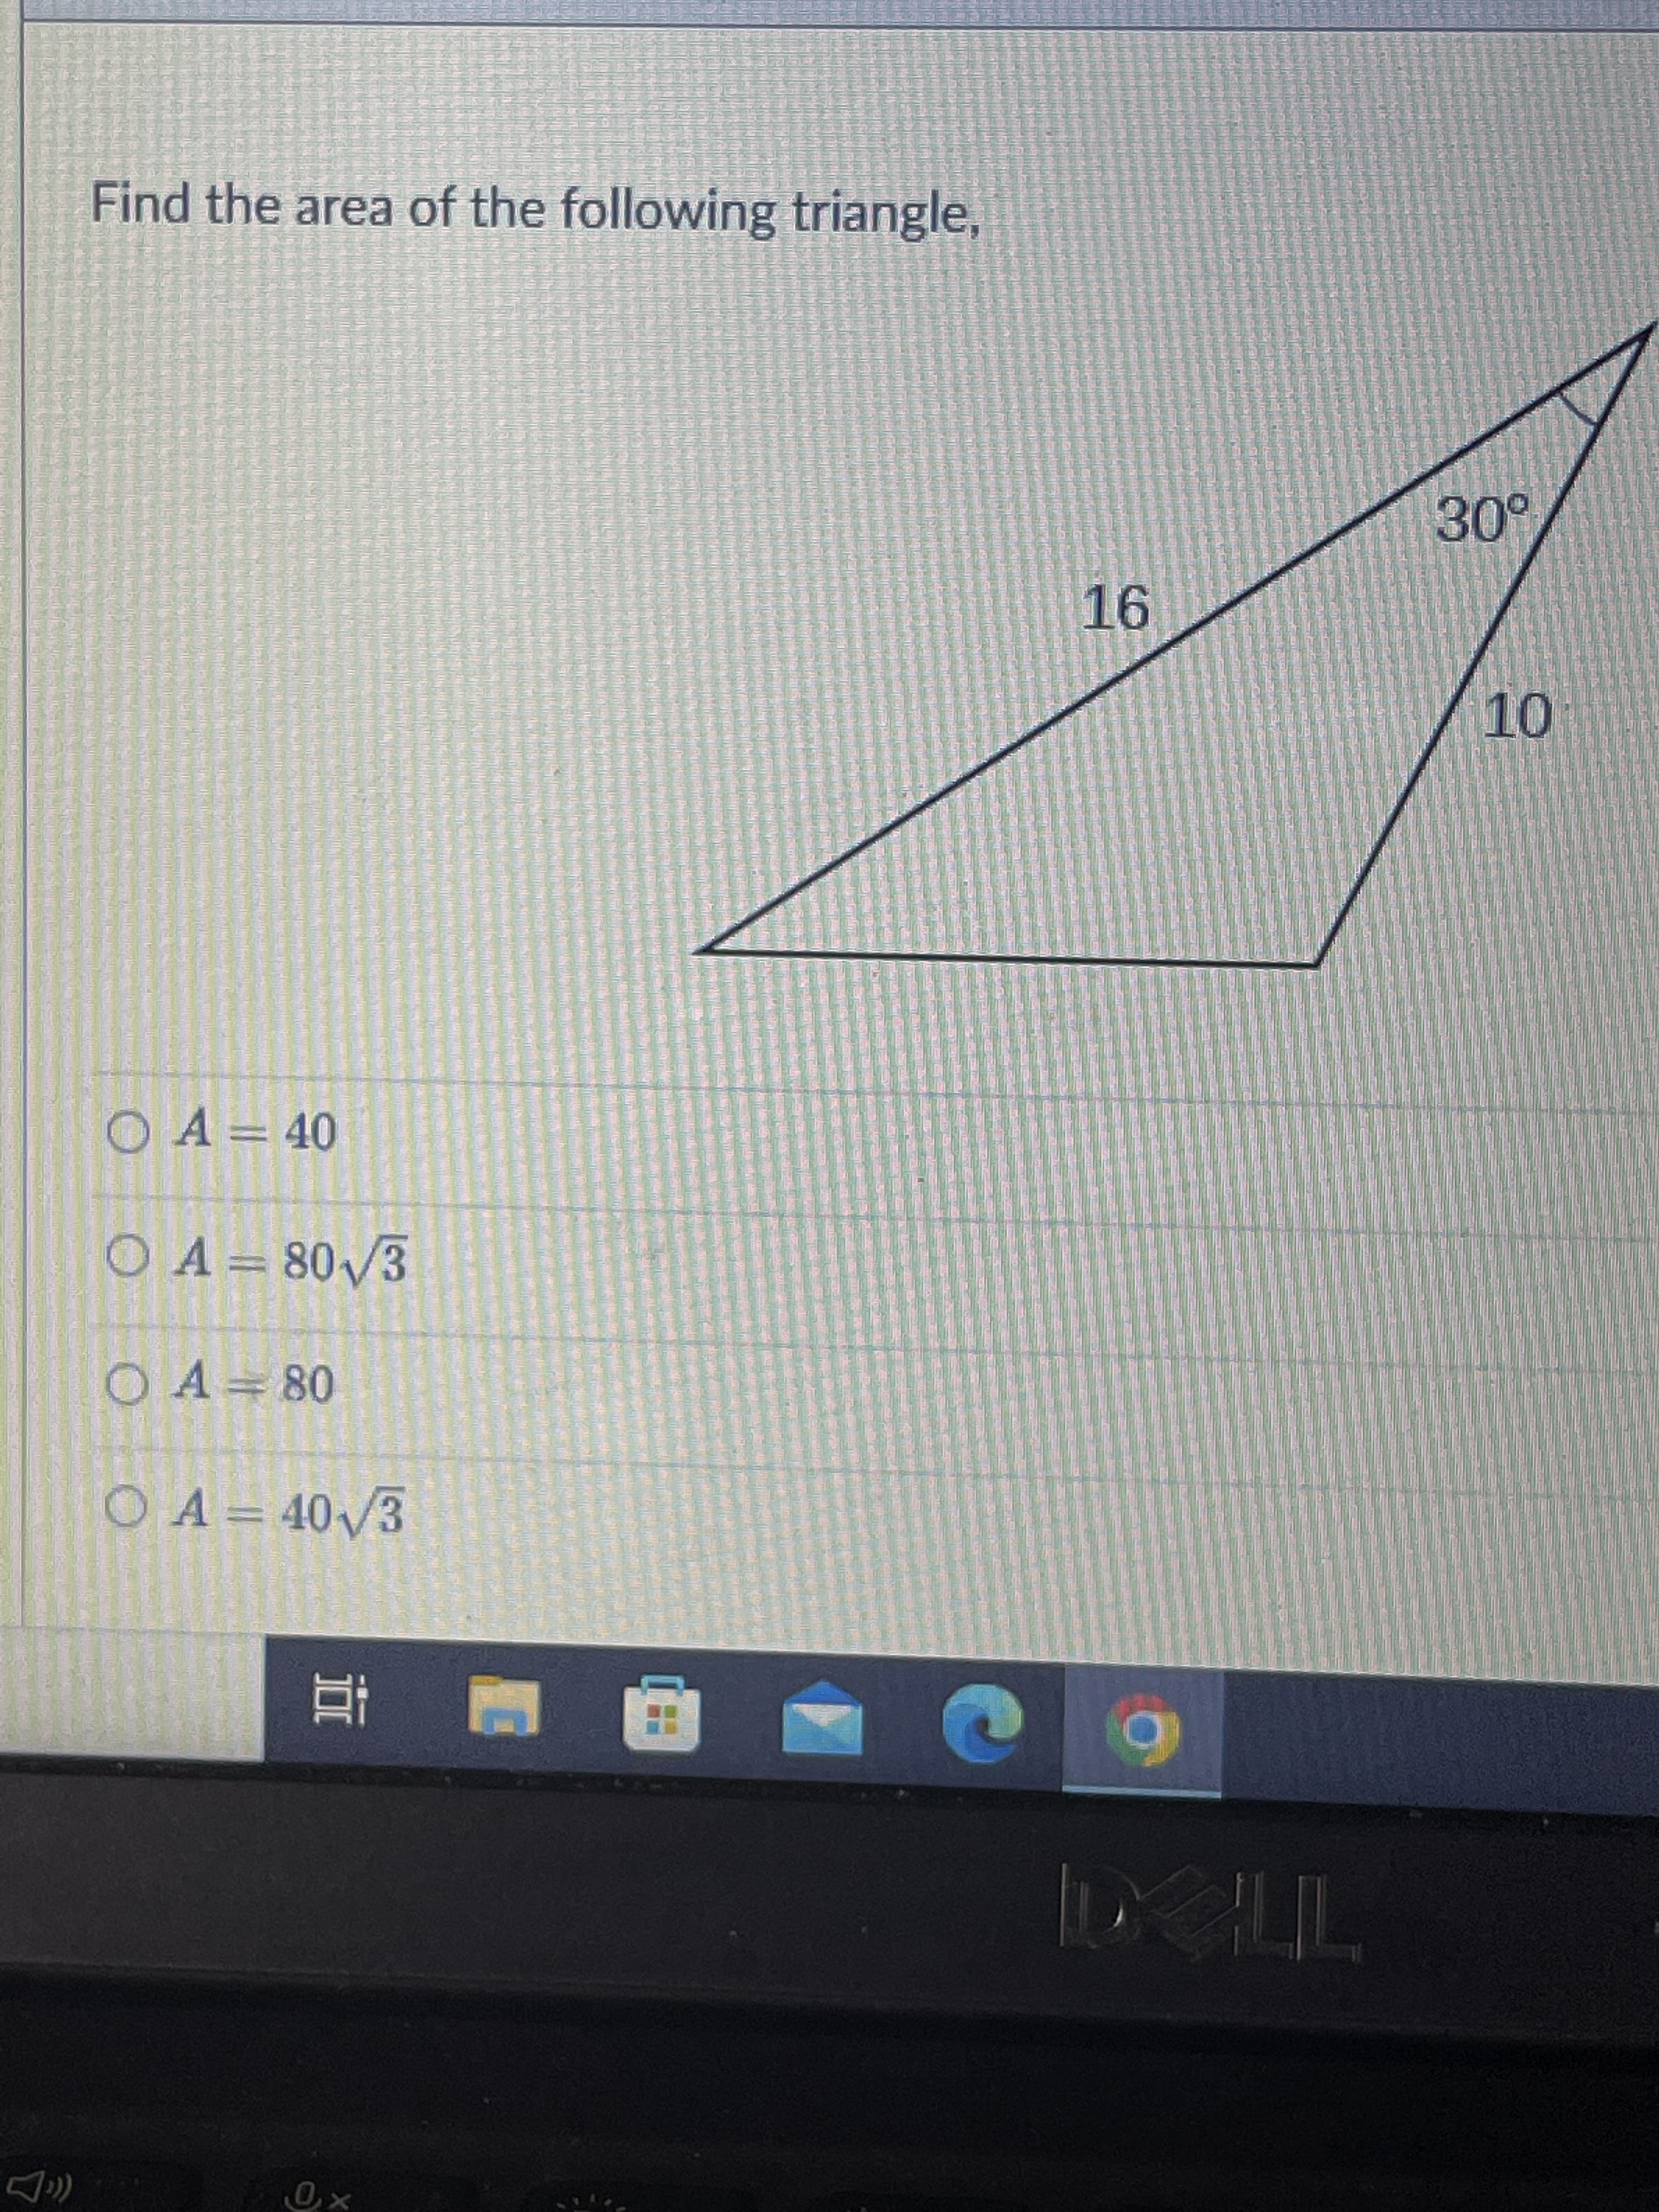 Find the area of the following triangle,
OA= 40
OA=80/3
O A= 80
O A= 40/3
RI
TH
